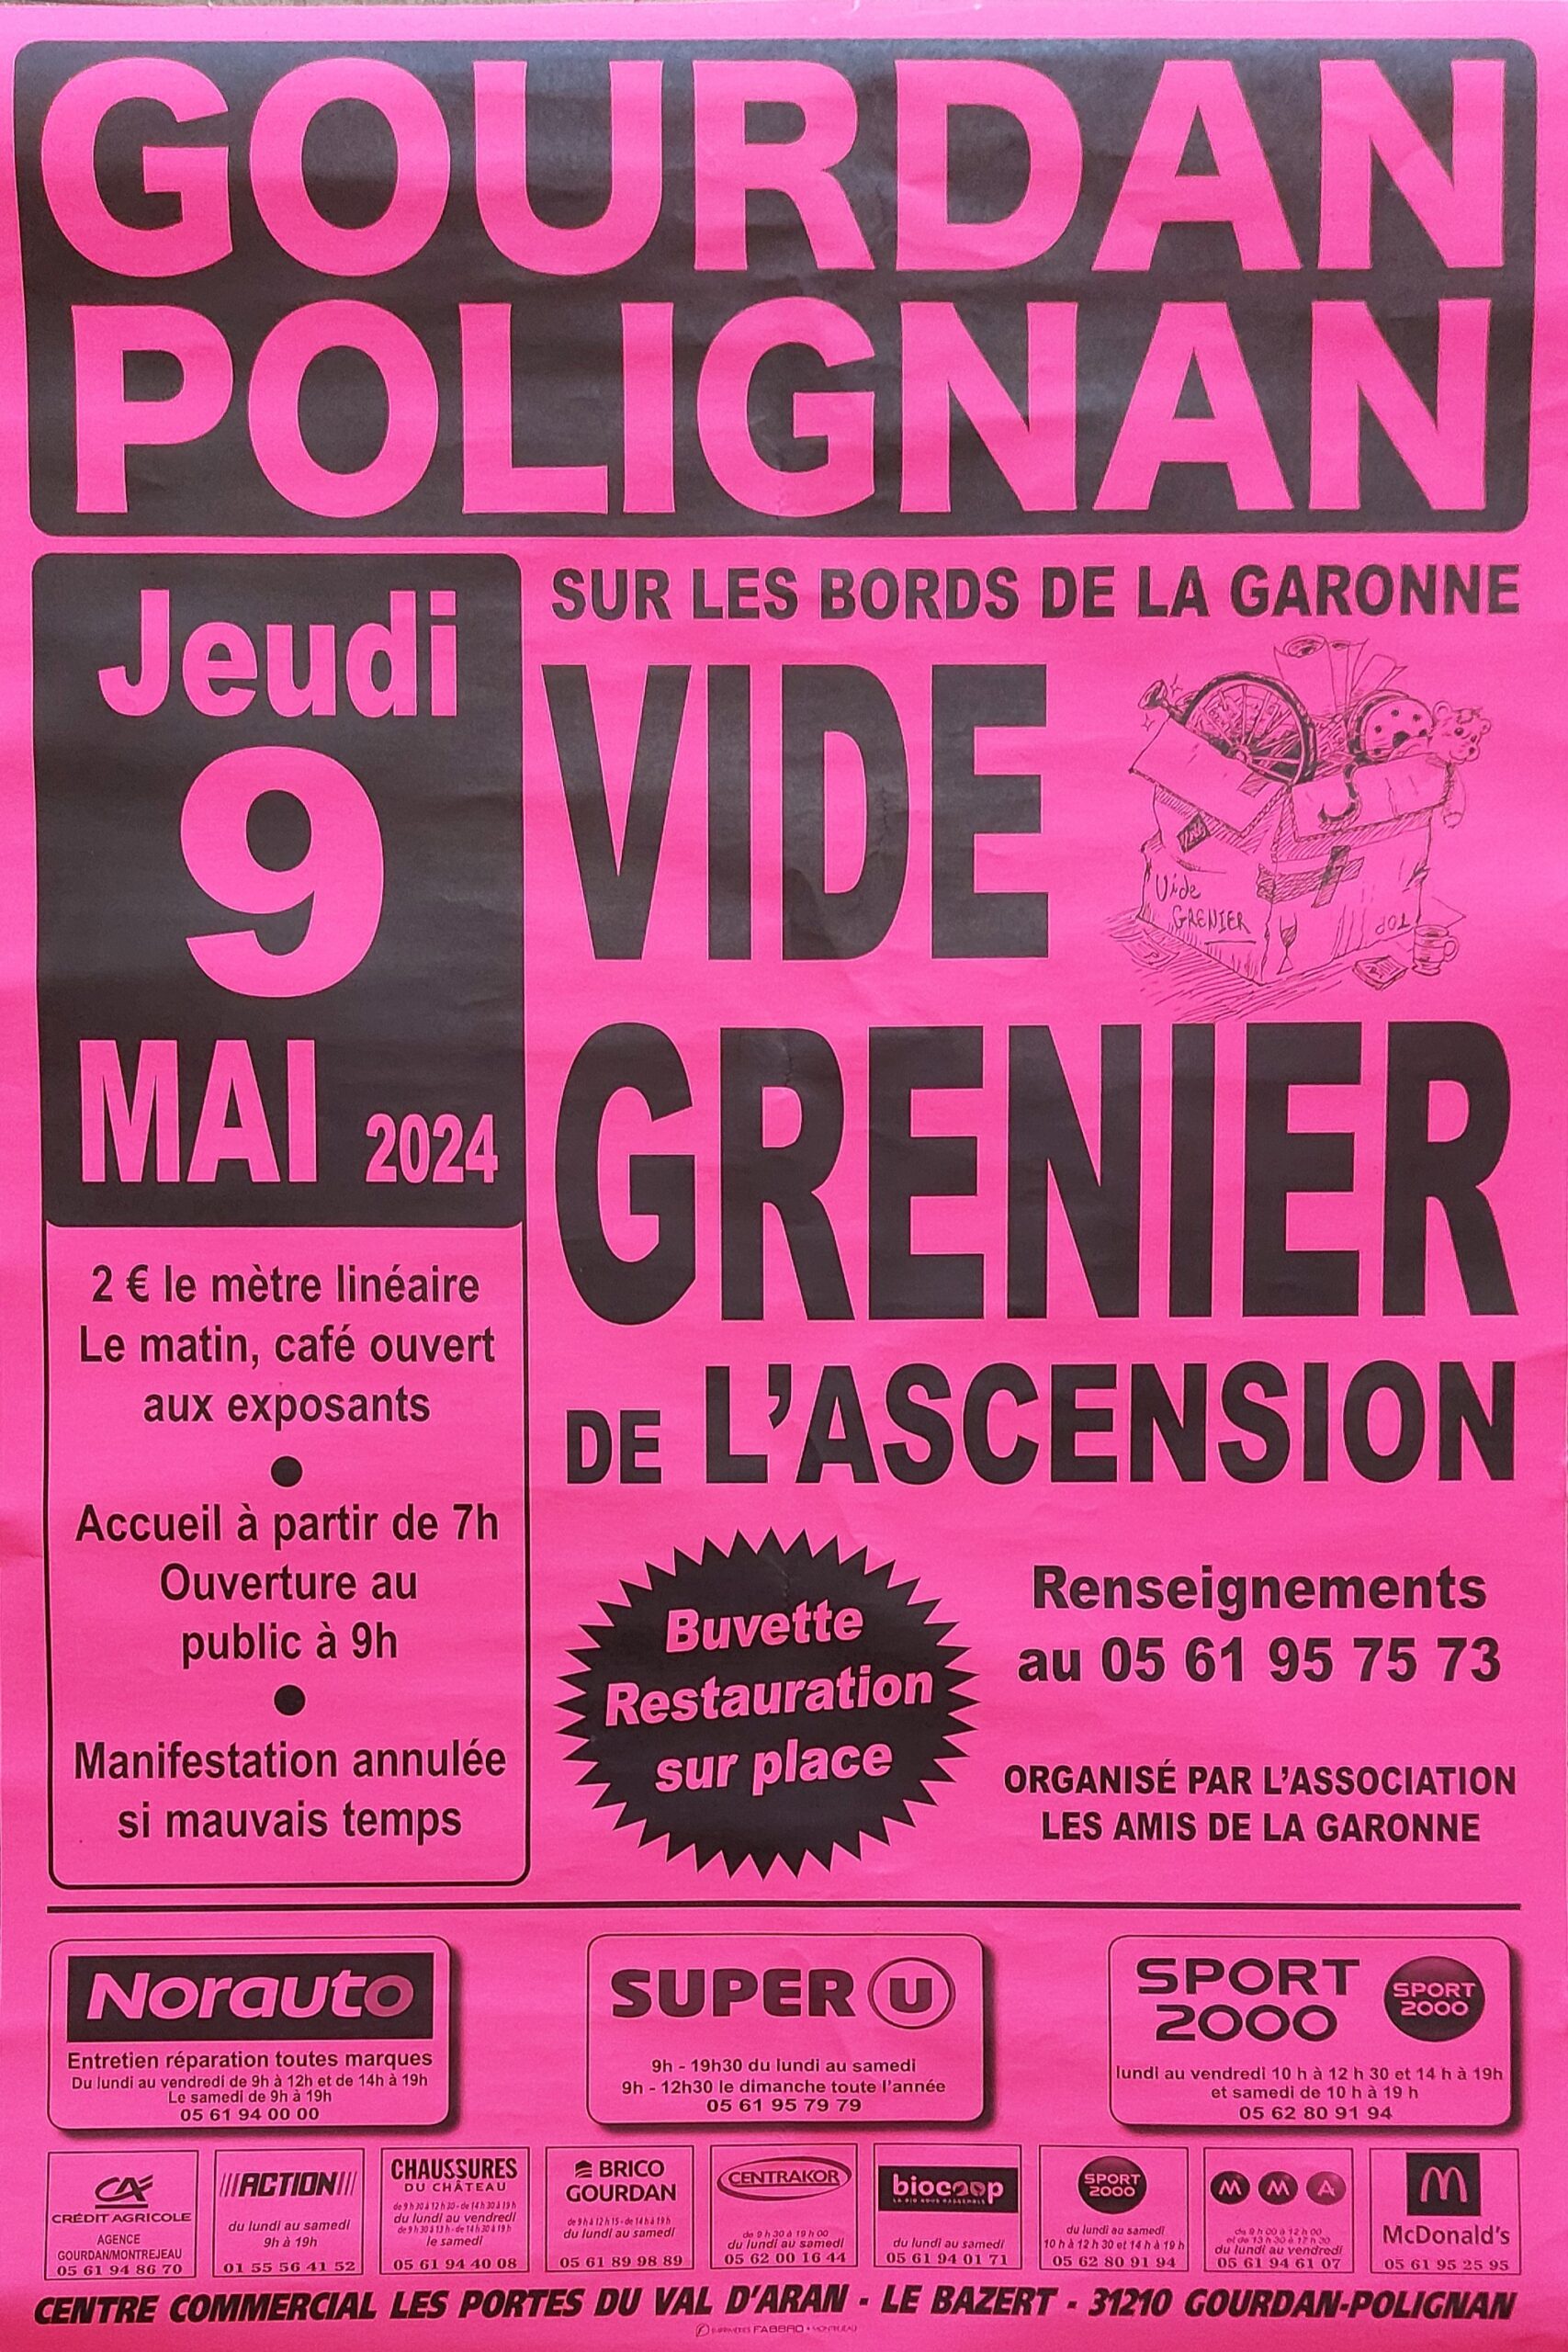 Vide grenier le 9 mai à Gourdan-Polignan